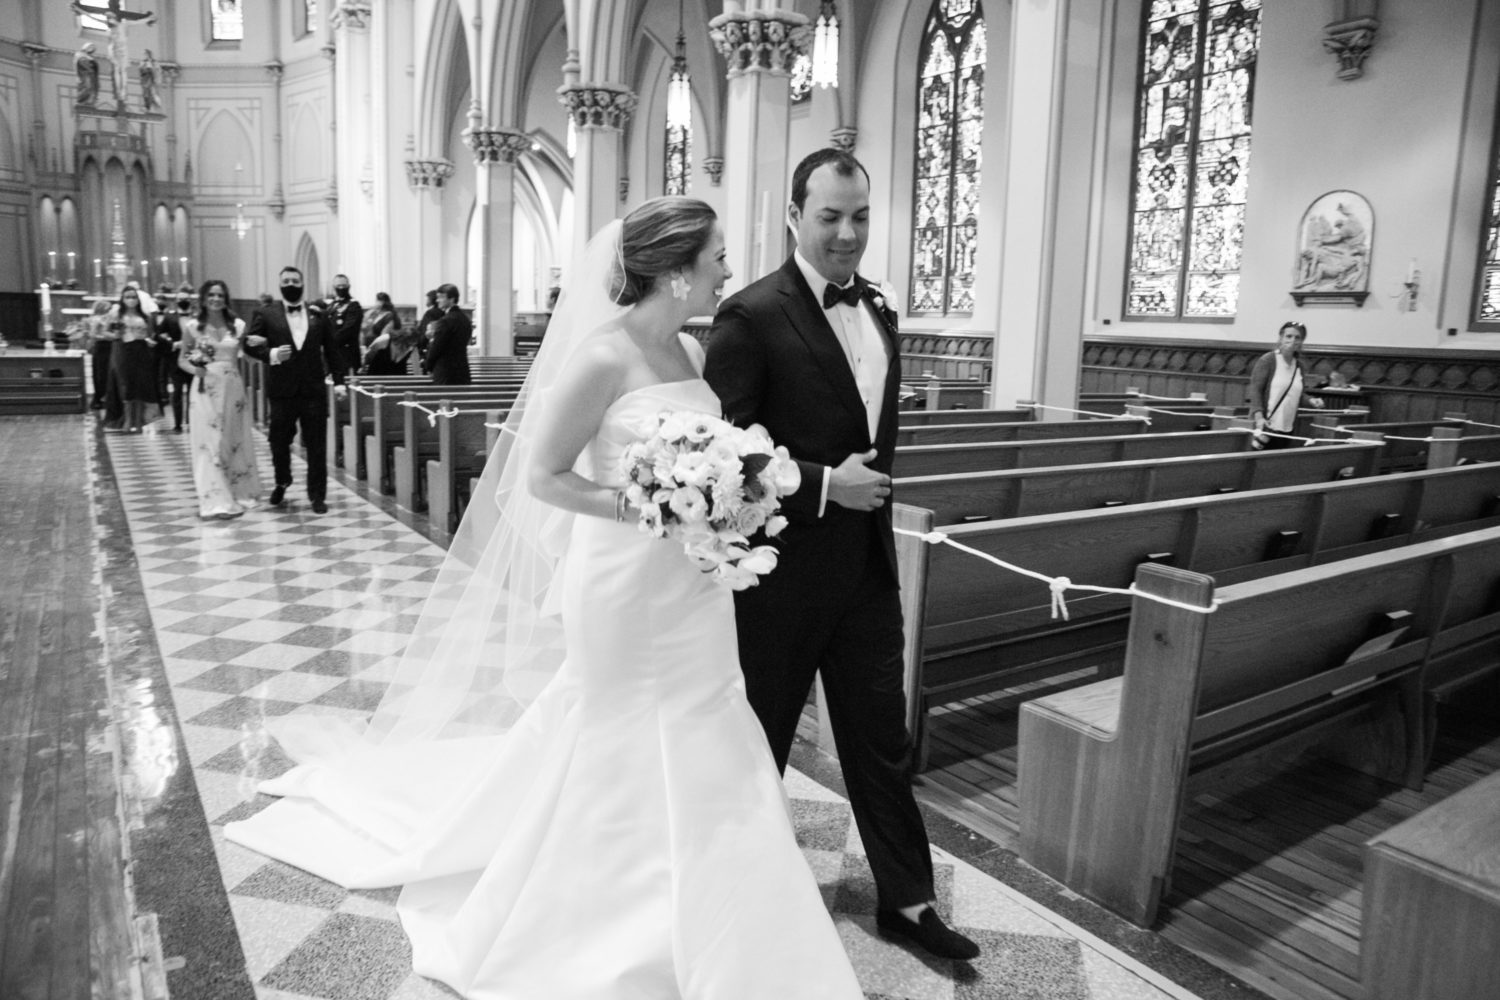 View More: https://kristengardner.pass.us/kate-andy-wedding